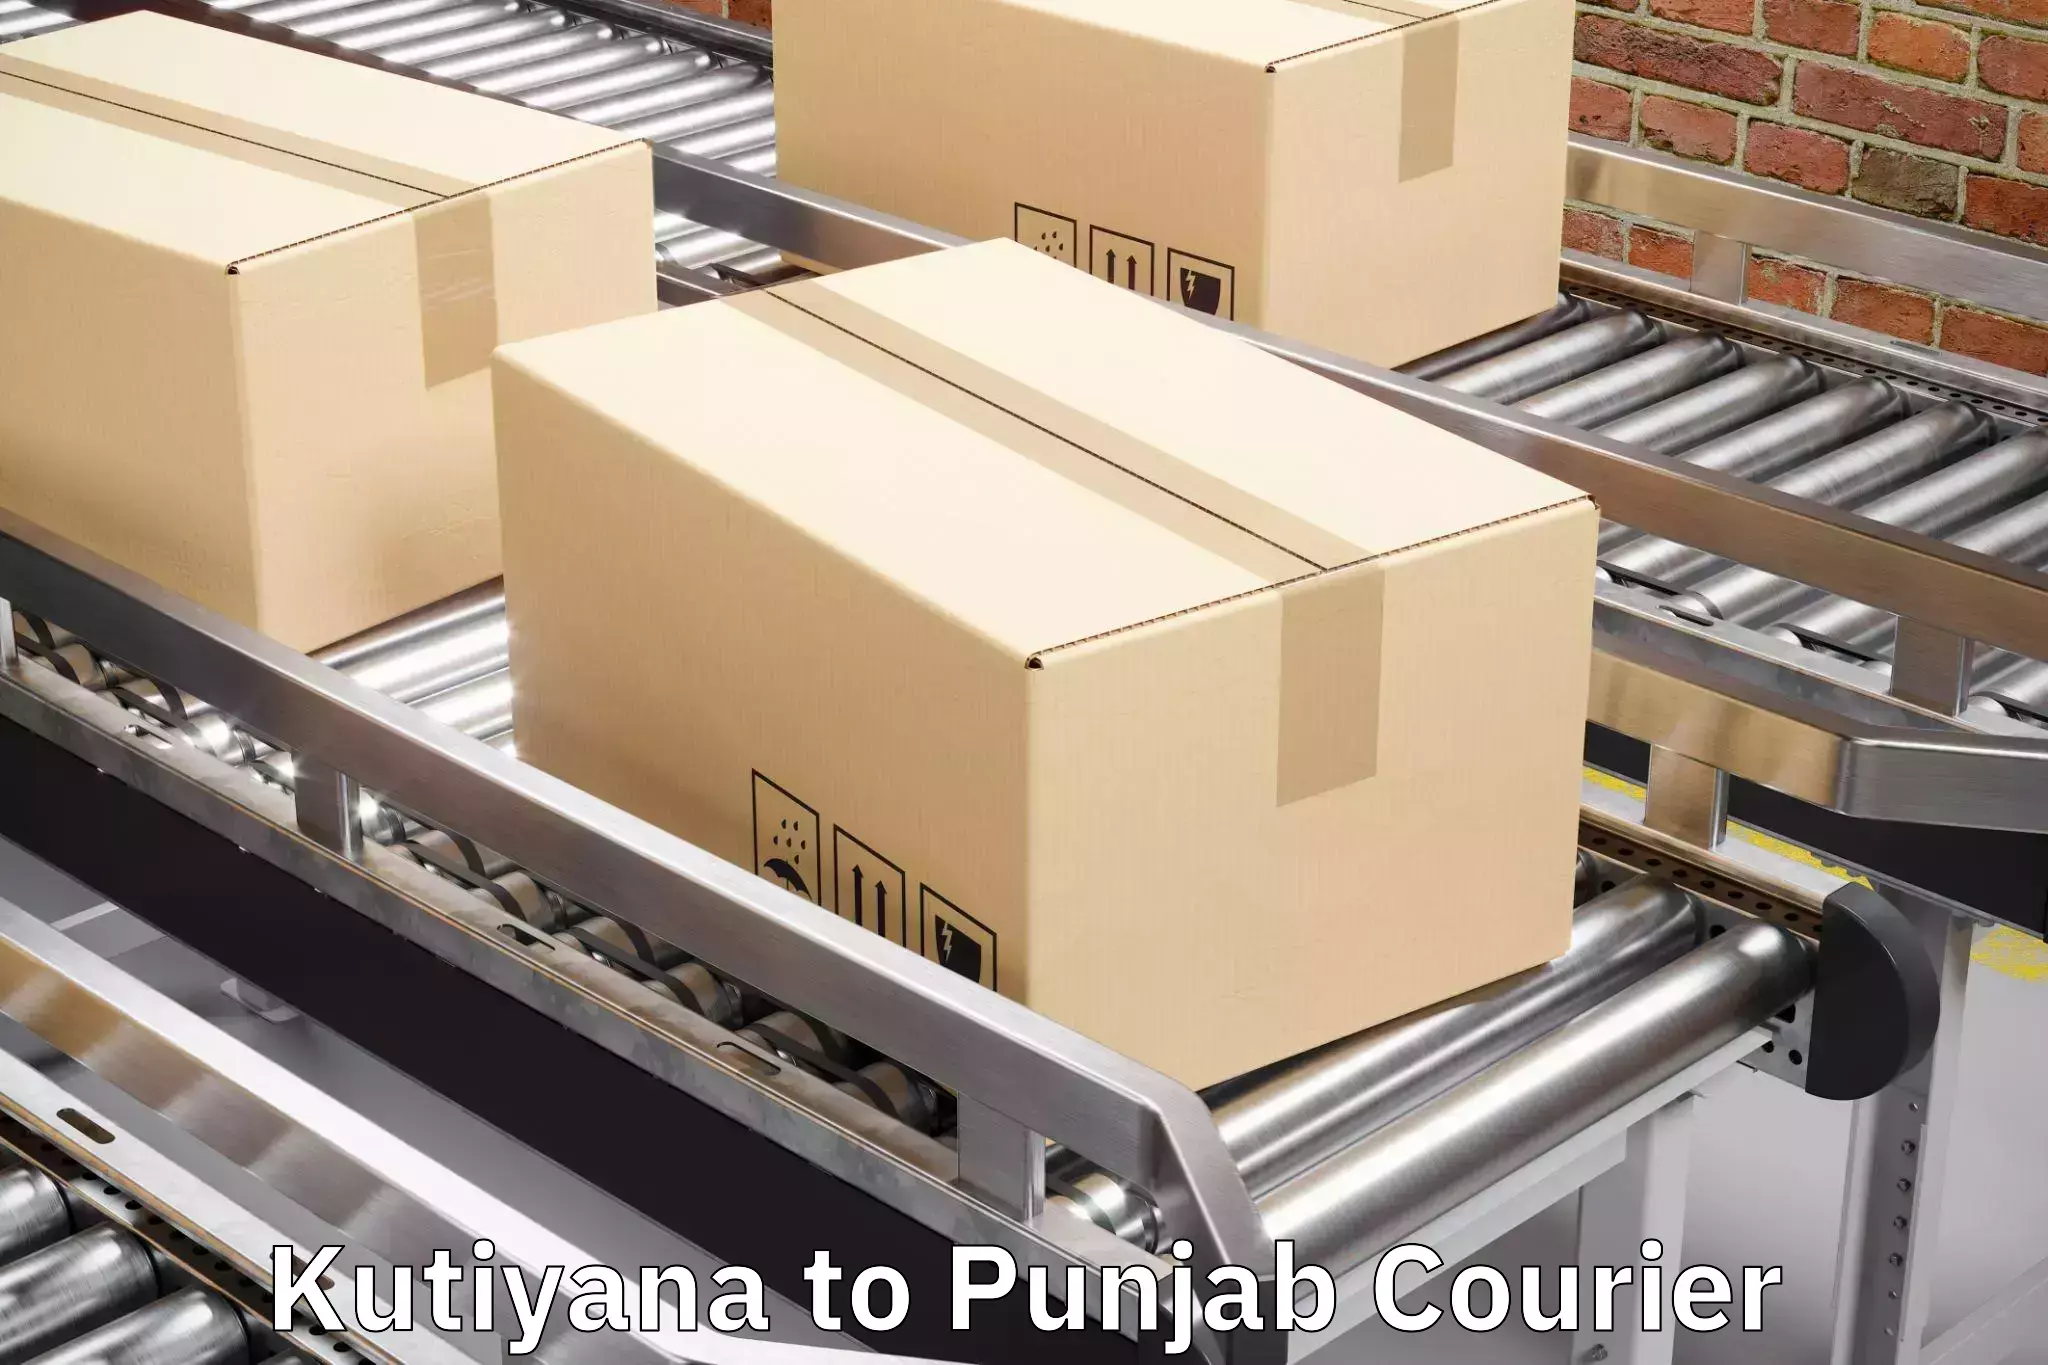 Luggage courier services Kutiyana to Punjab